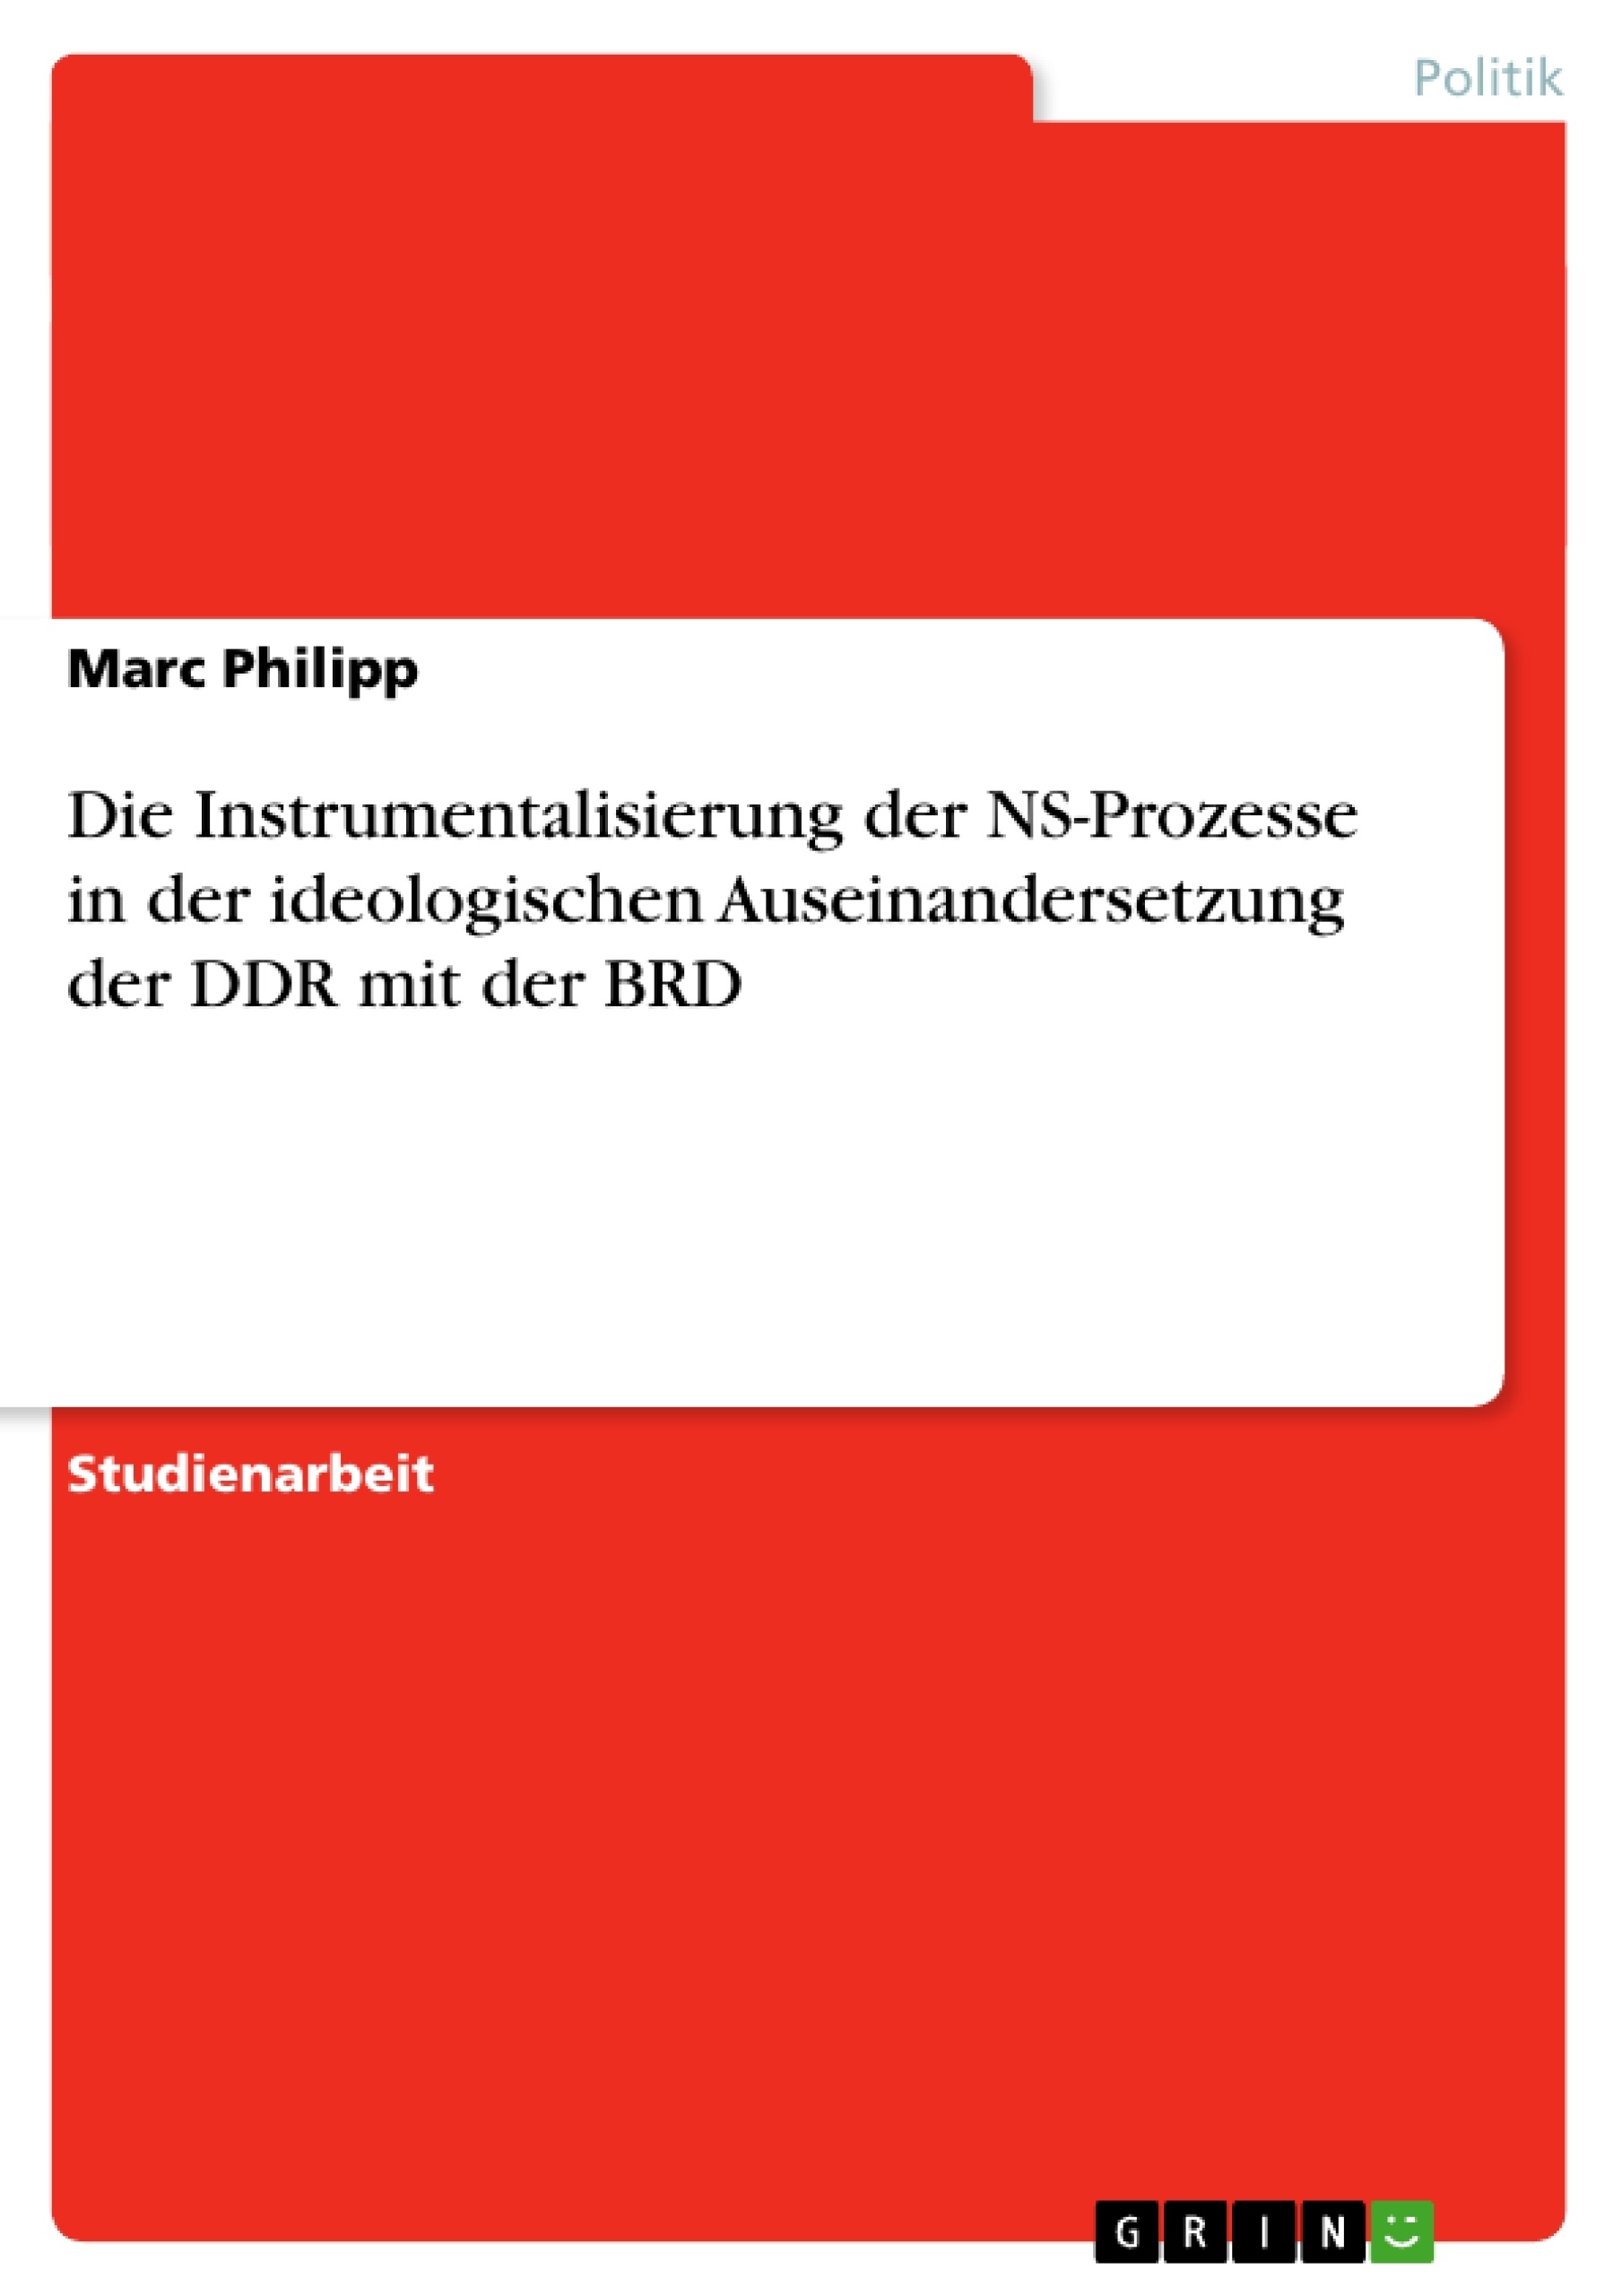 Title: Die Instrumentalisierung der NS-Prozesse in der ideologischen Auseinandersetzung der DDR mit der BRD